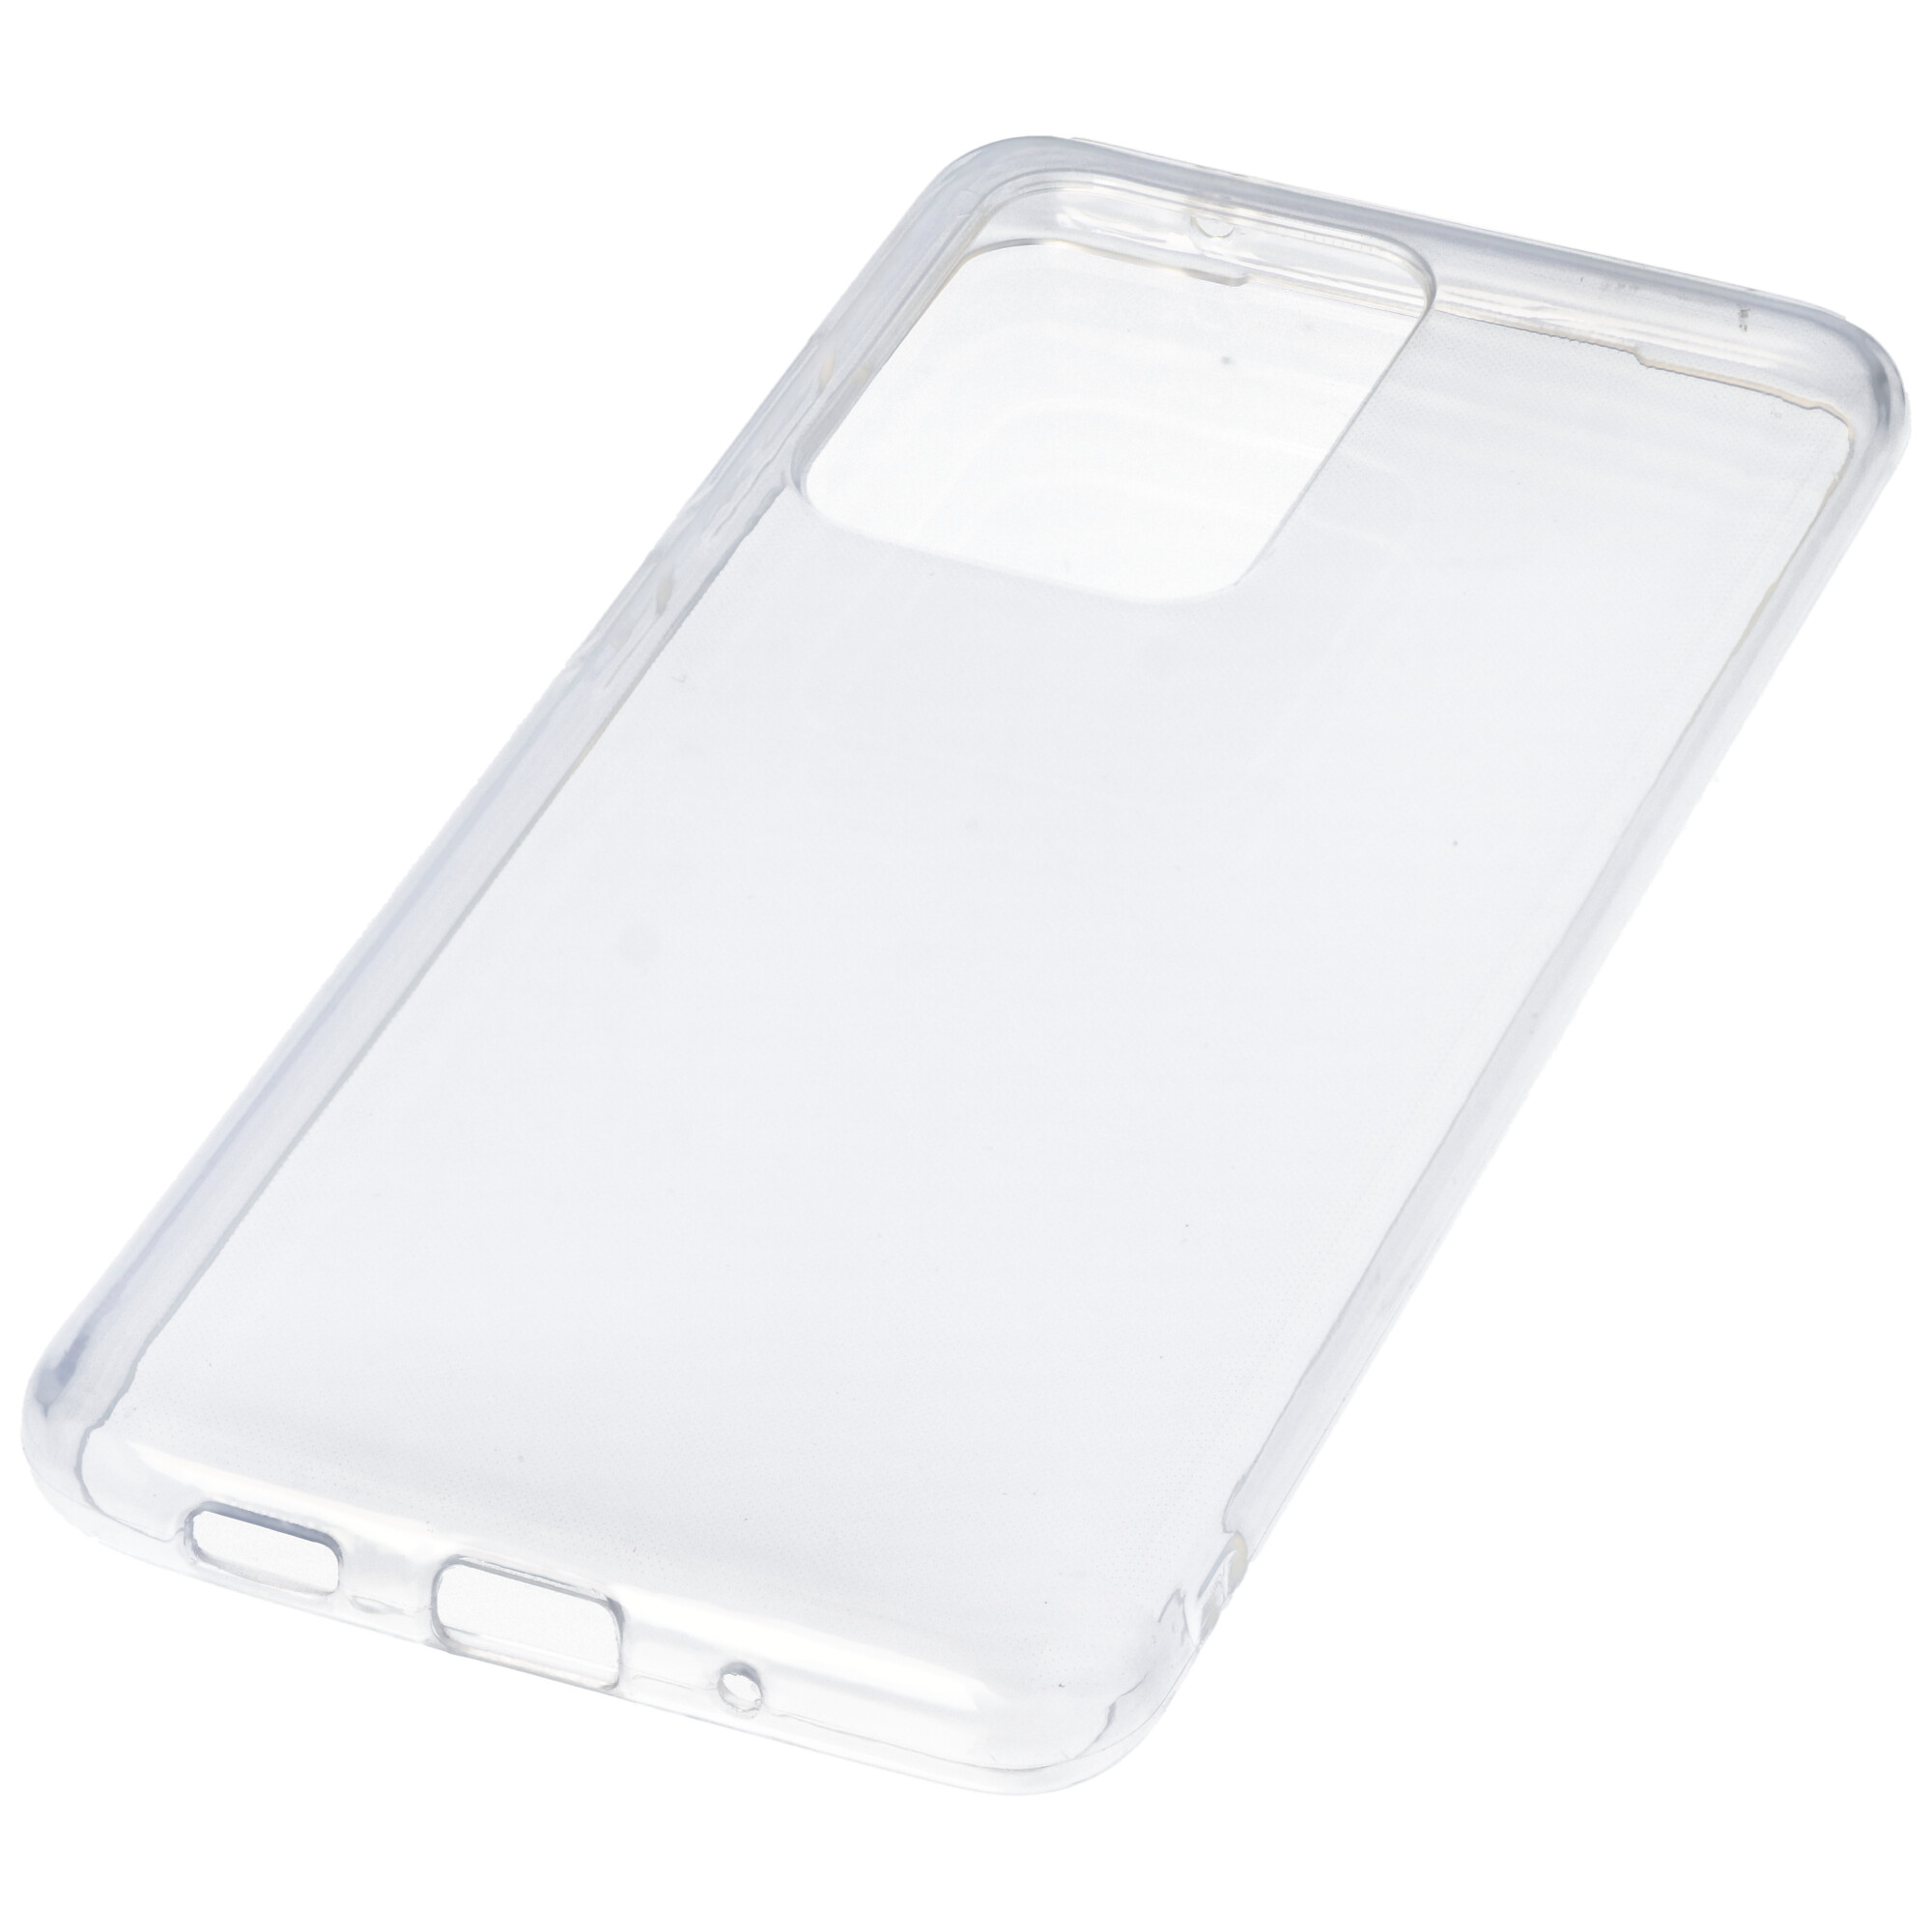 Hülle passend für Samsung Galaxy S20 Ultra - transparente Schutzhülle, Anti-Gelb Luftkissen Fallschutz Silikon Handyhülle robustes TPU Case